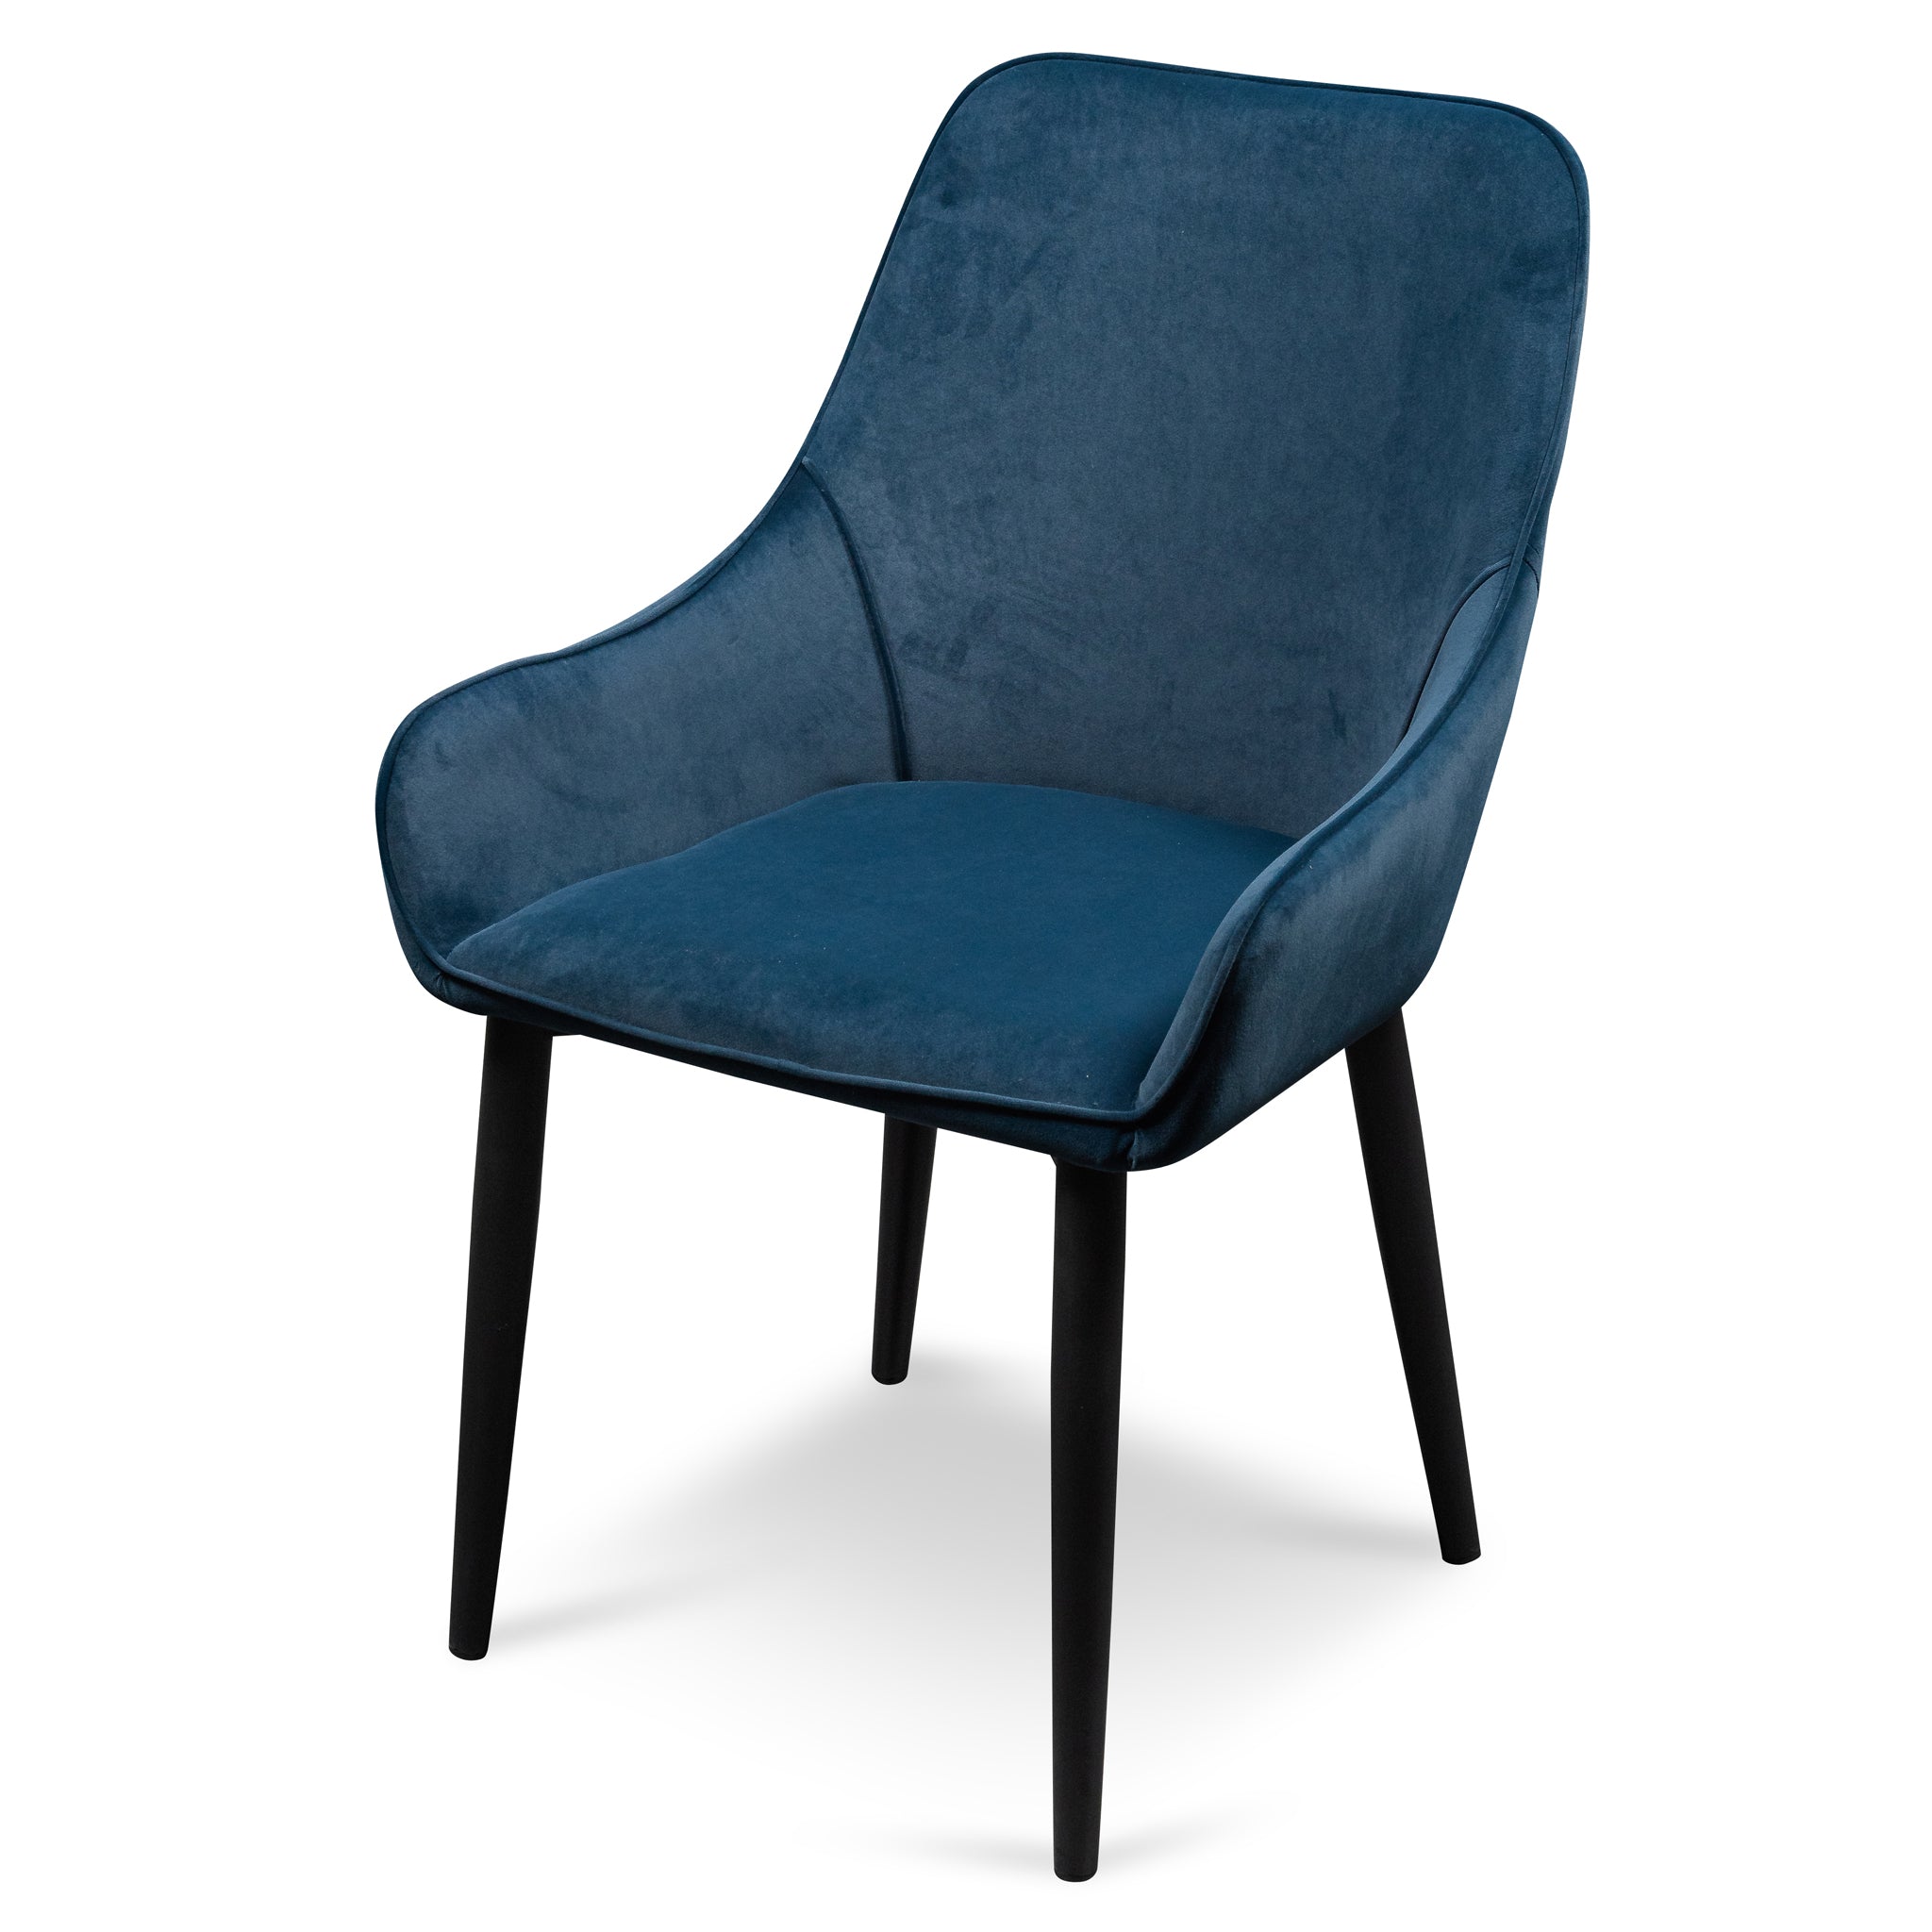  Dining Chair - Navy Blue Velvet with Black Legs_1